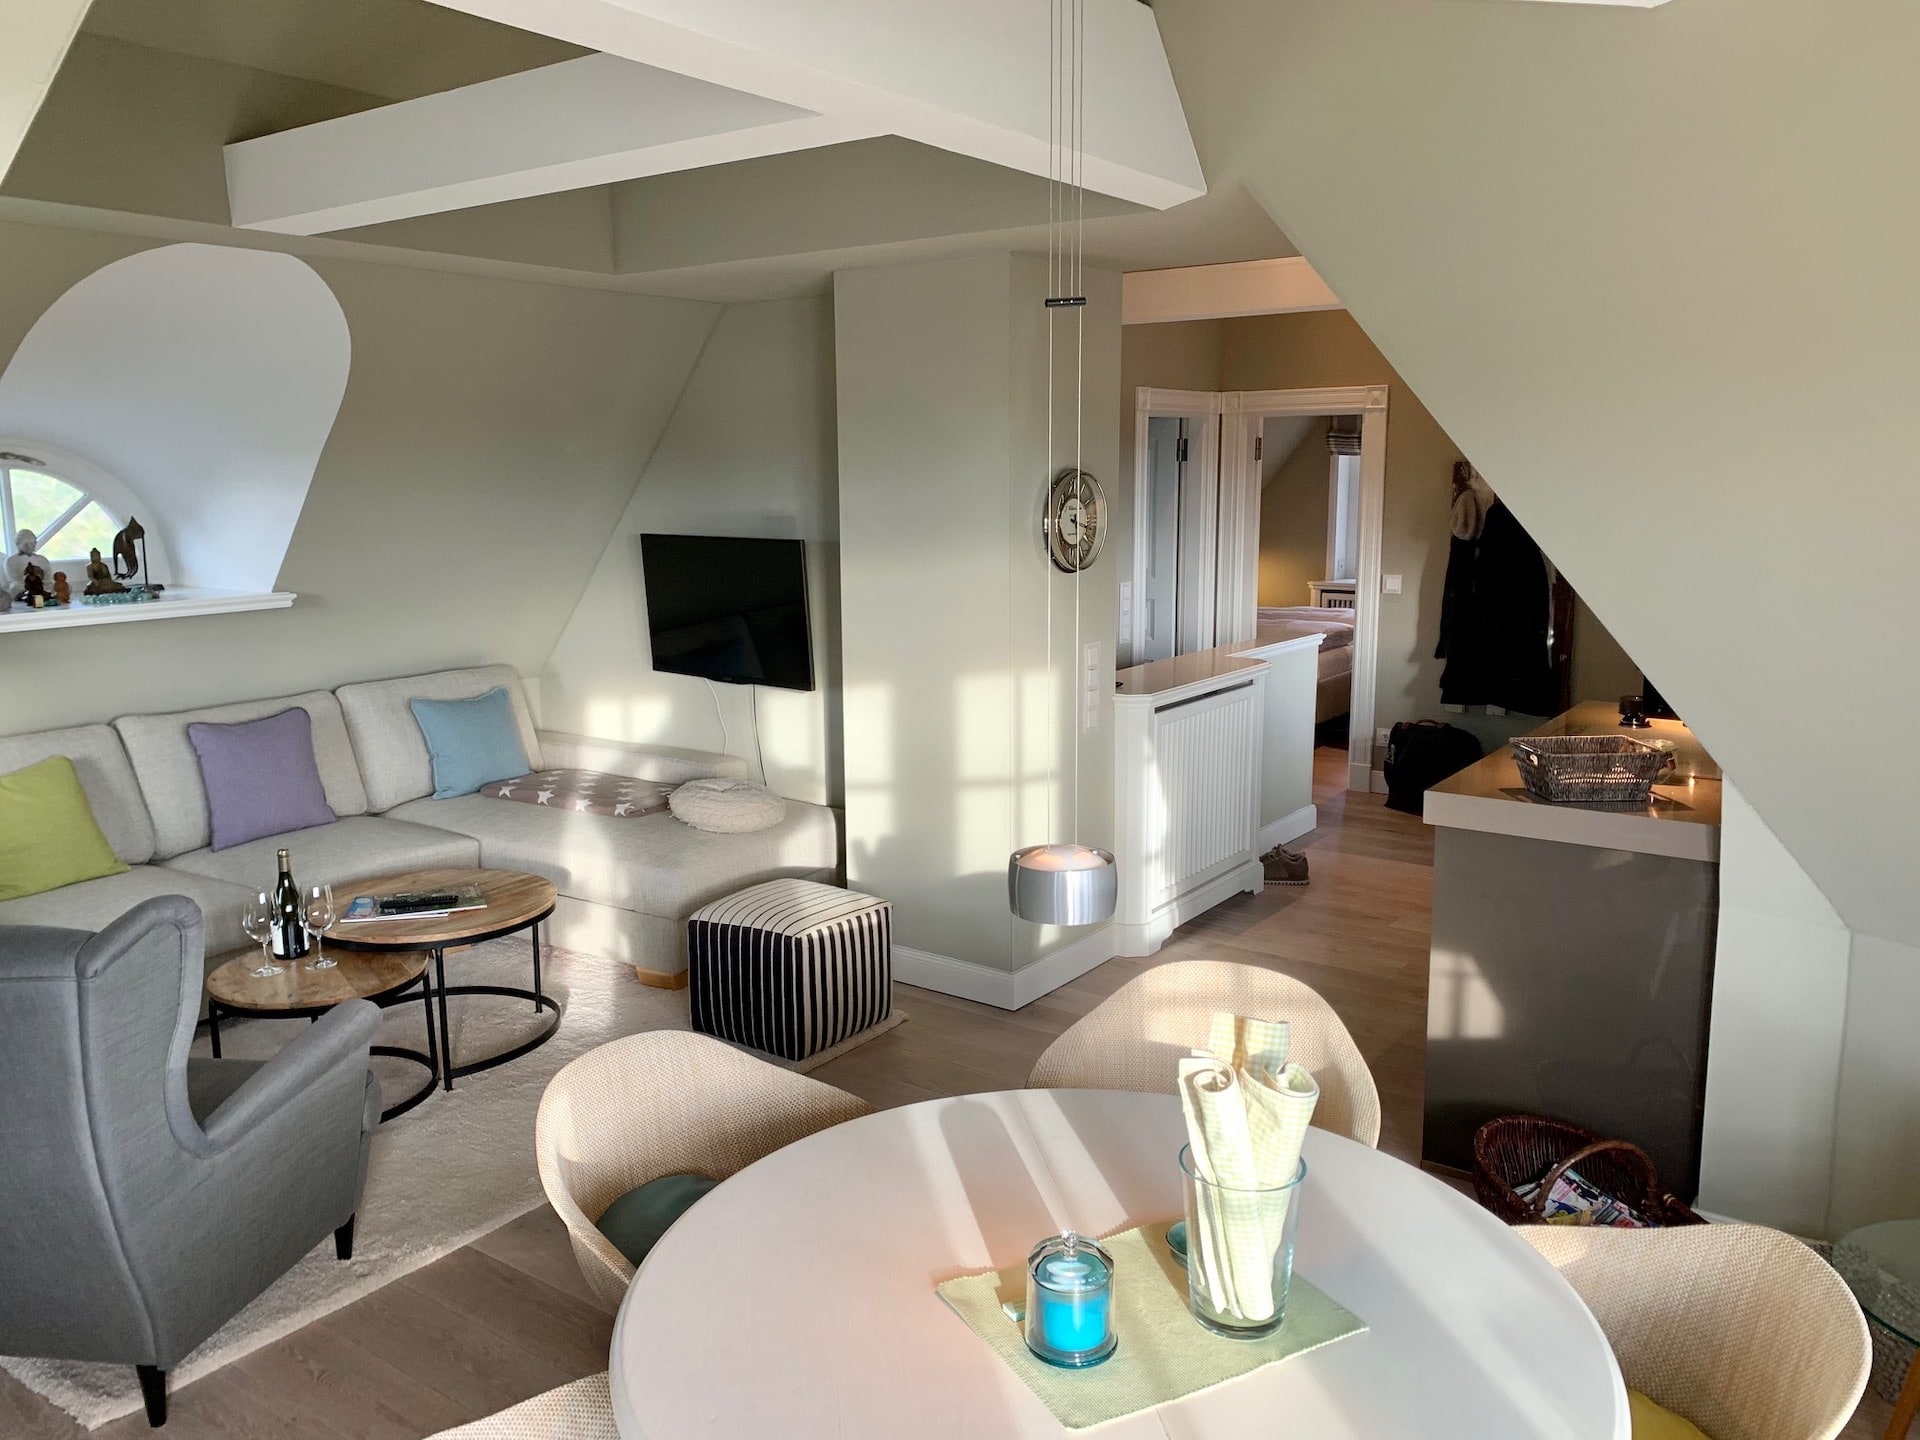 Wohnbereich "Sonnenhügel" mit Essküche in der Ferienwohnung in Rantum auf Sylt, betreut vom Hotel Düne